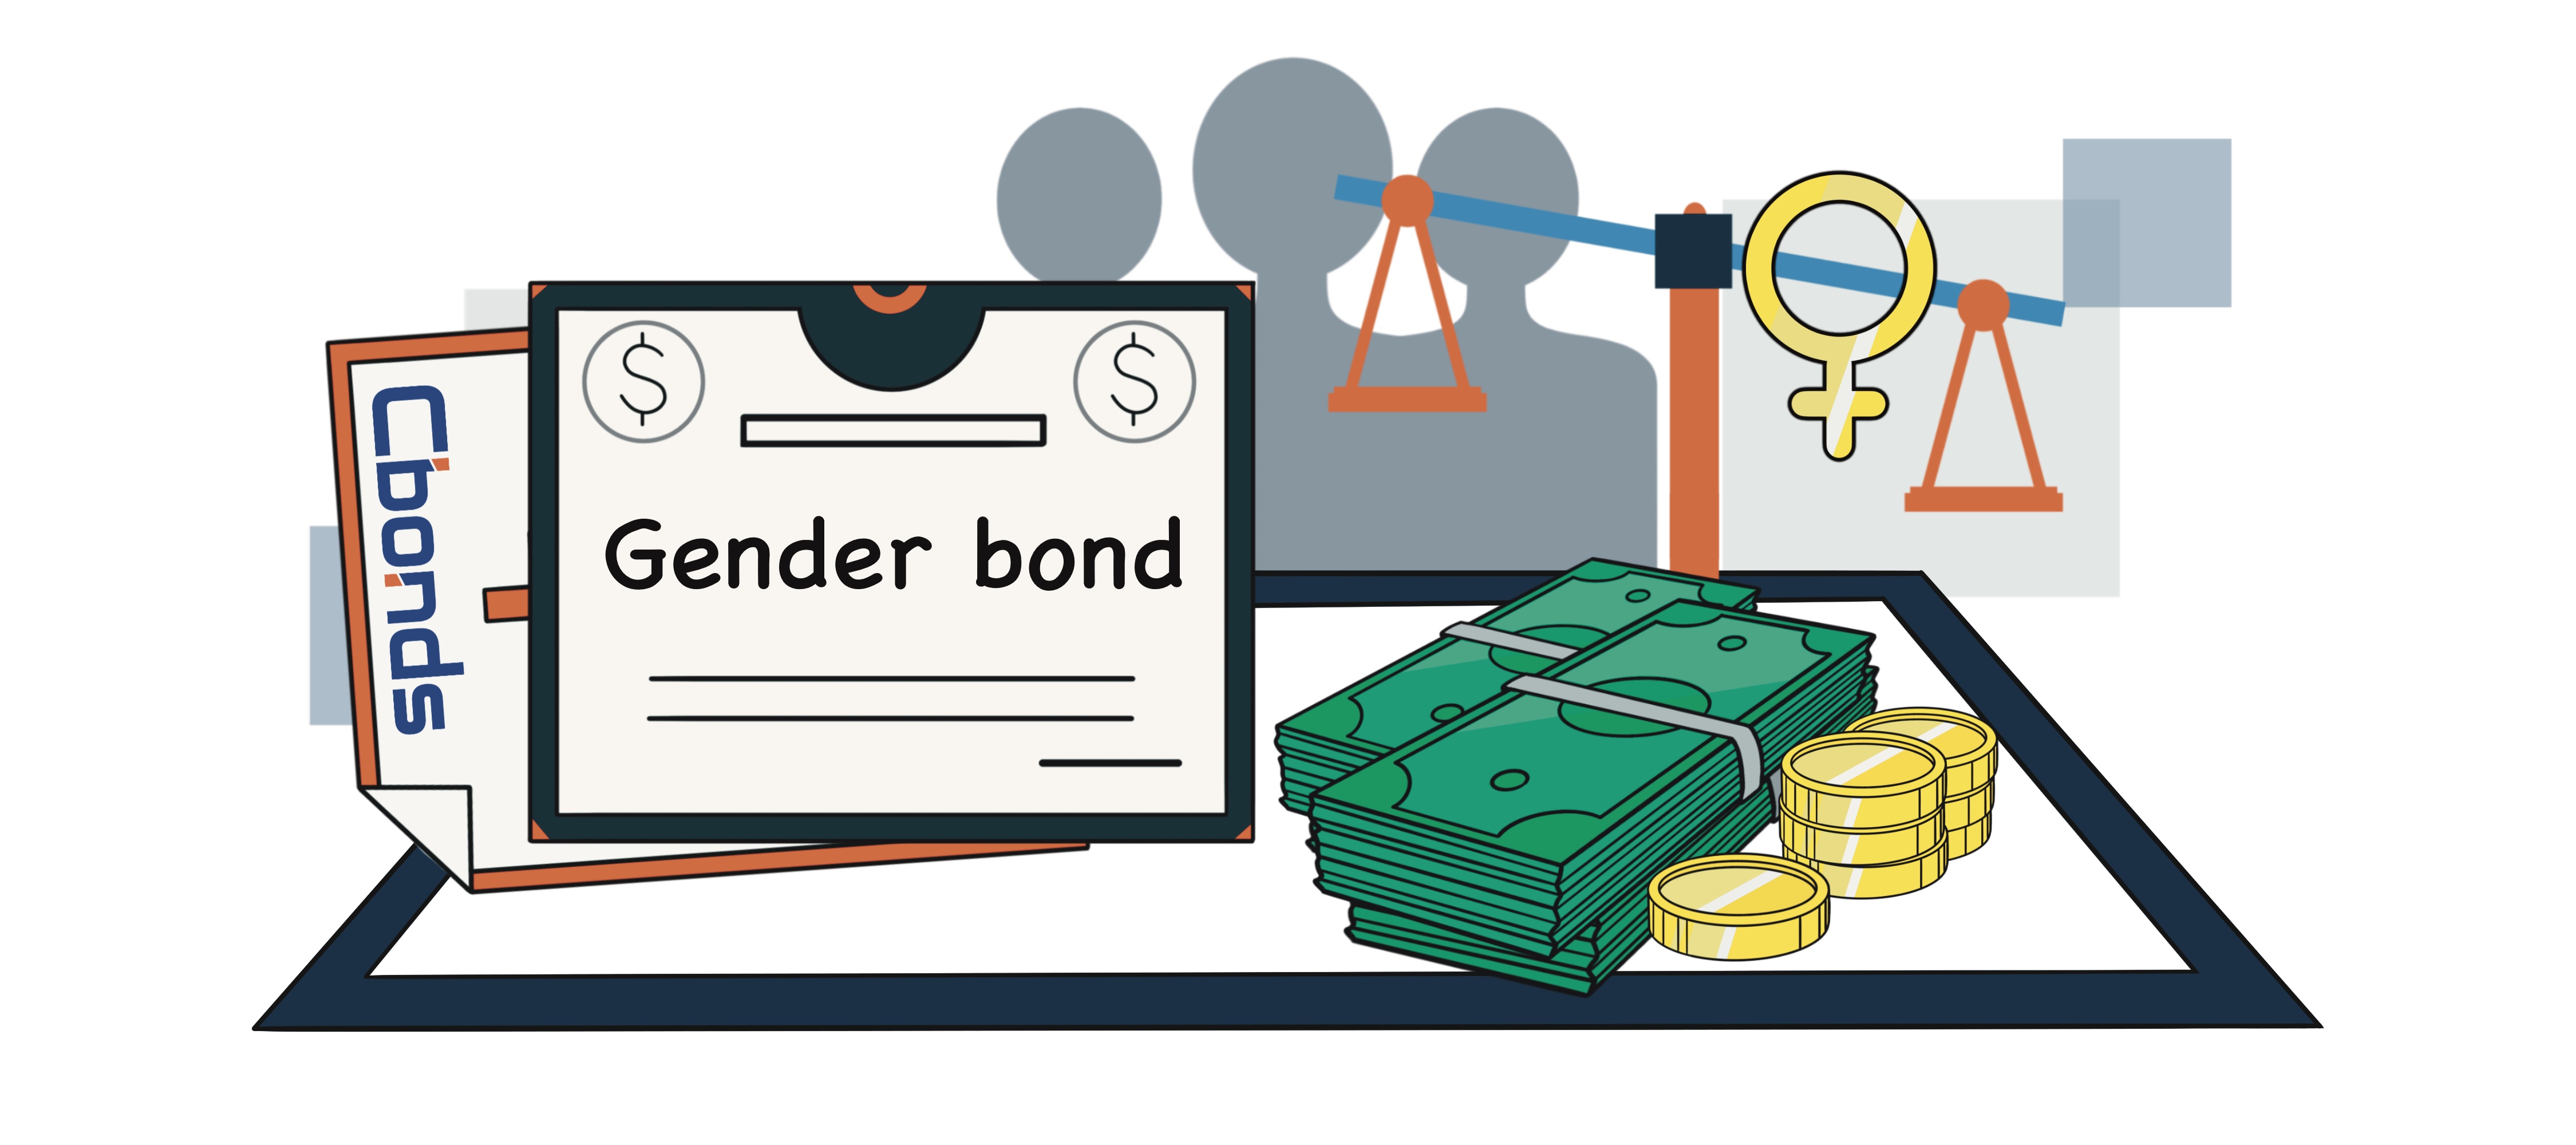 Gender bond